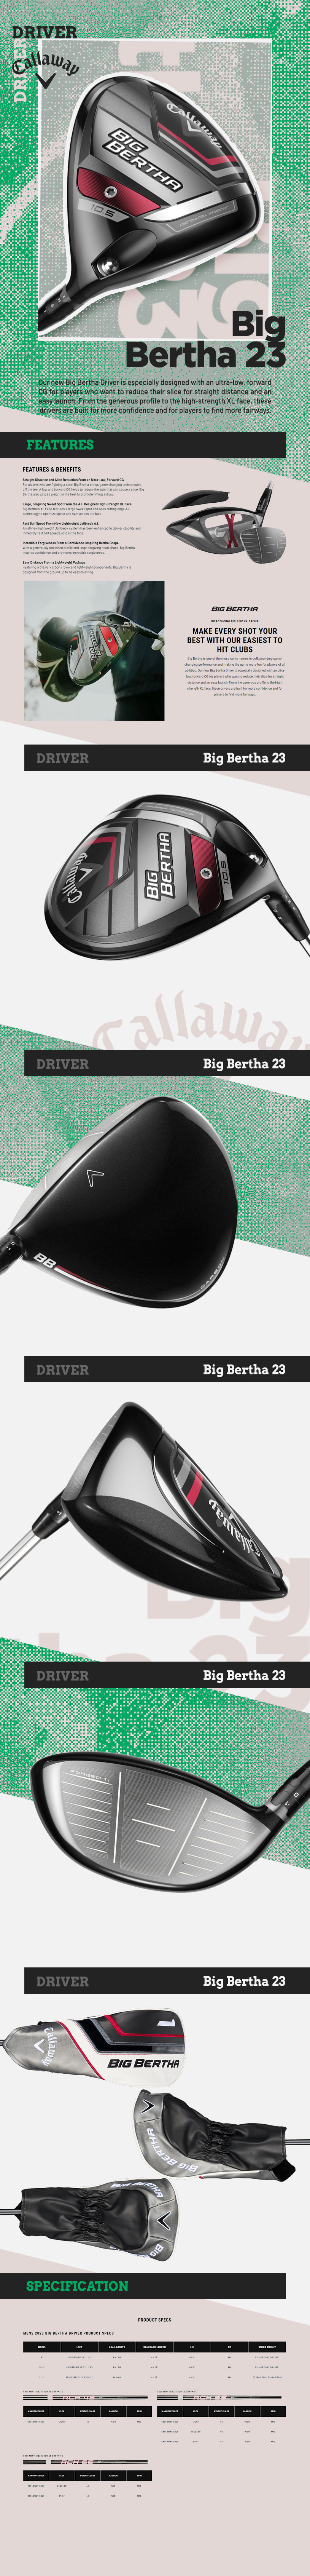 Big-Bertha-23-Driver_desc.jpg